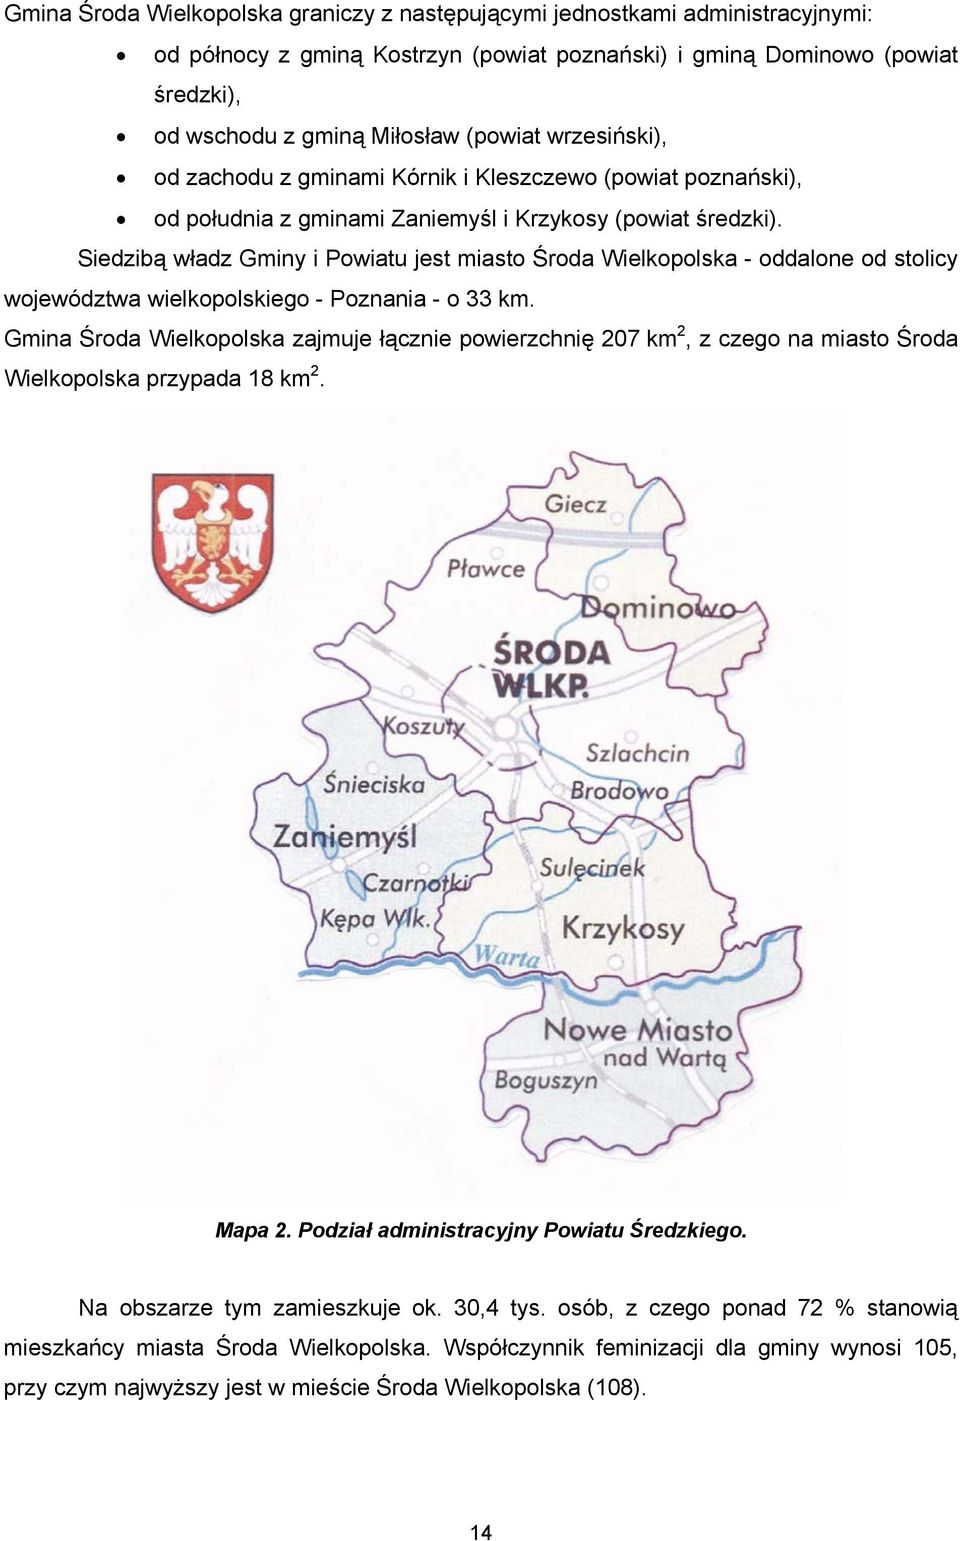 Siedzibą władz Gminy i Powiatu jest miasto Środa Wielkopolska - oddalone od stolicy województwa wielkopolskiego - Poznania - o 33 km.